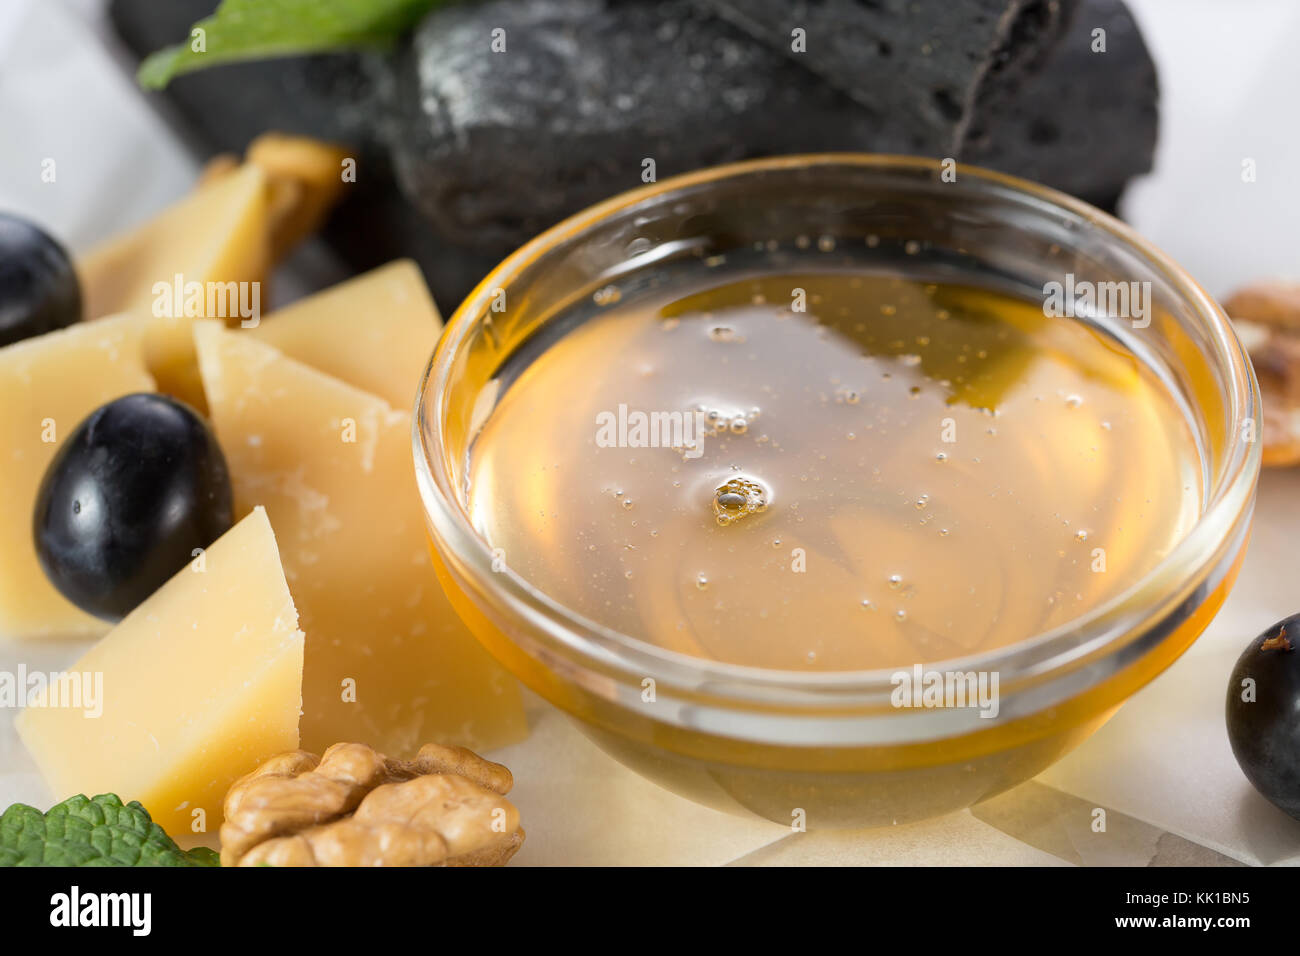 Un assortiment de fromage et les olives. Banque D'Images